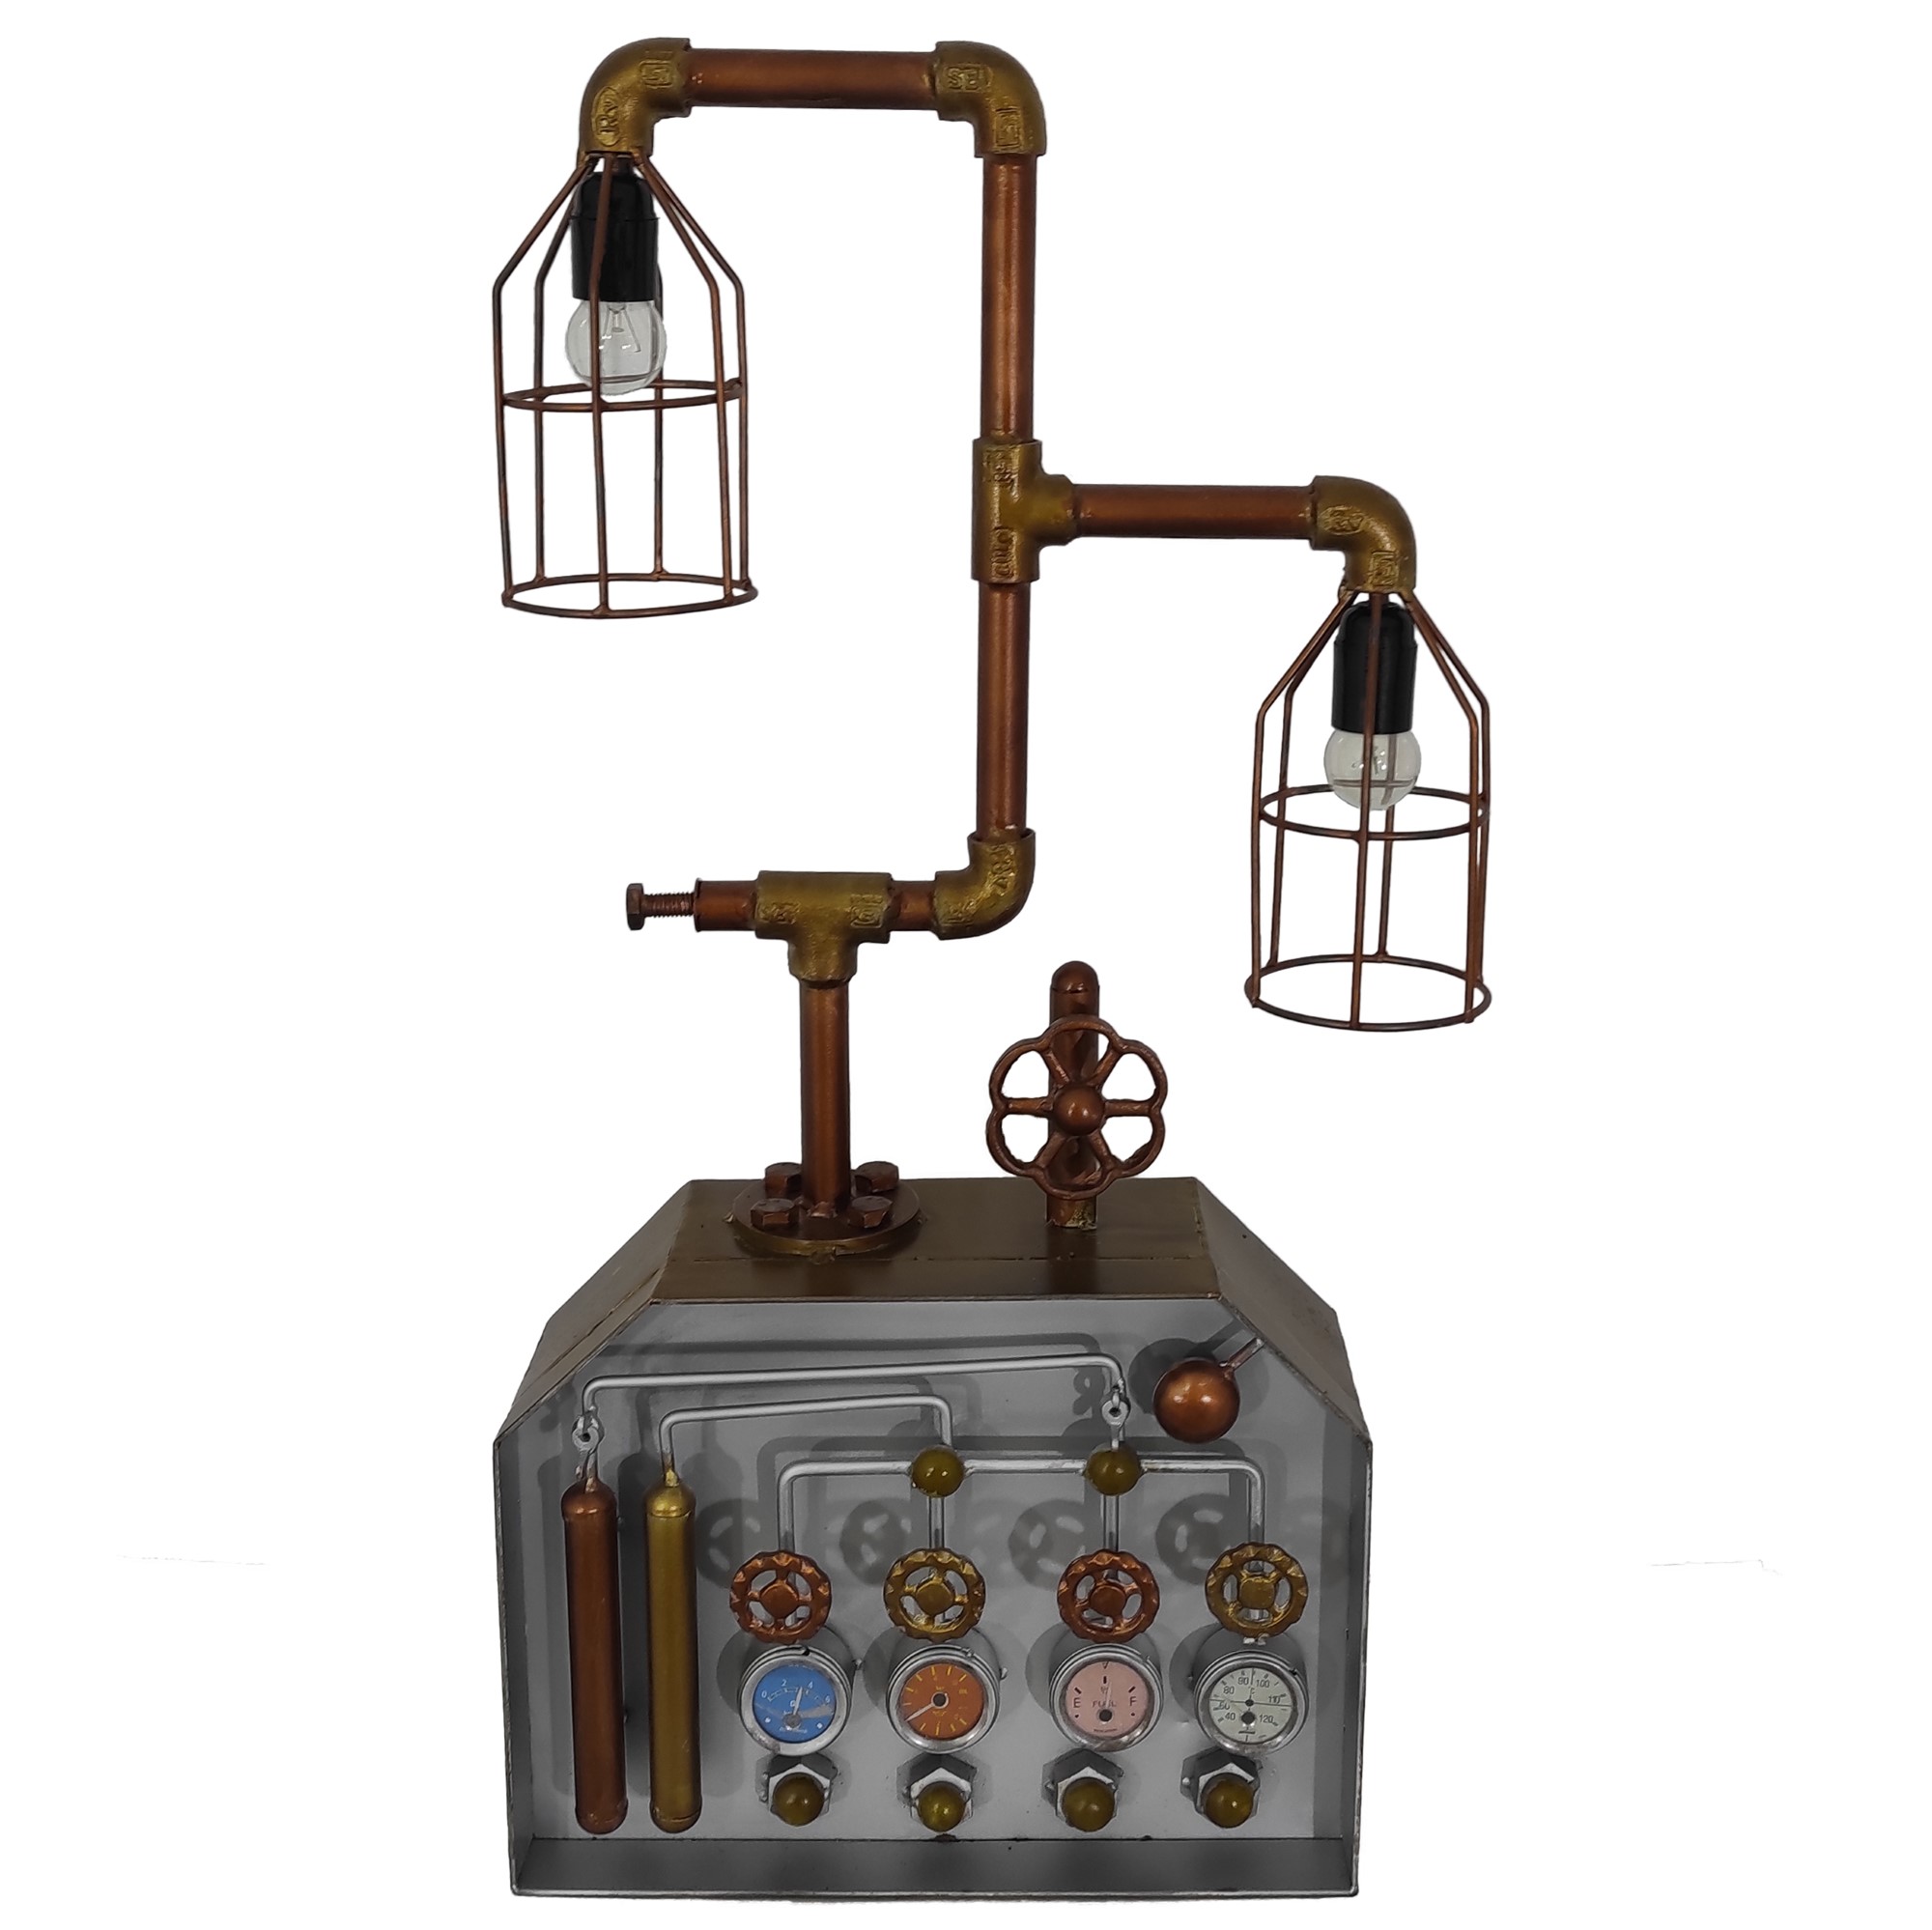 Chahel Industrialna lampa dekoracyjna ze stali